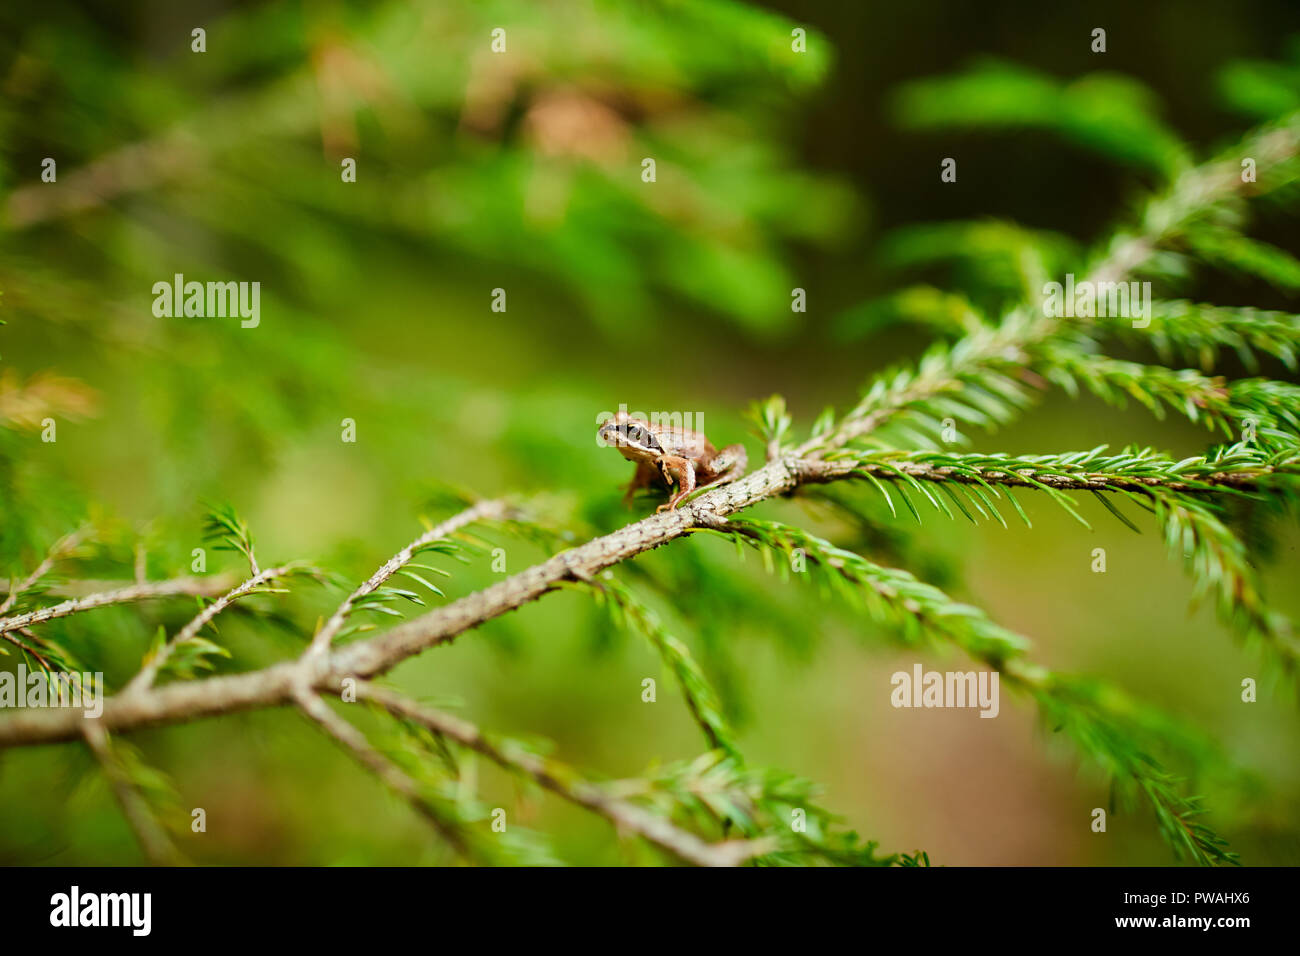 Kleiner brauner Frosch sitzend auf firtree Zweigstelle durch helle grüne Nadelbaum im Wald bedeckt Stockfoto